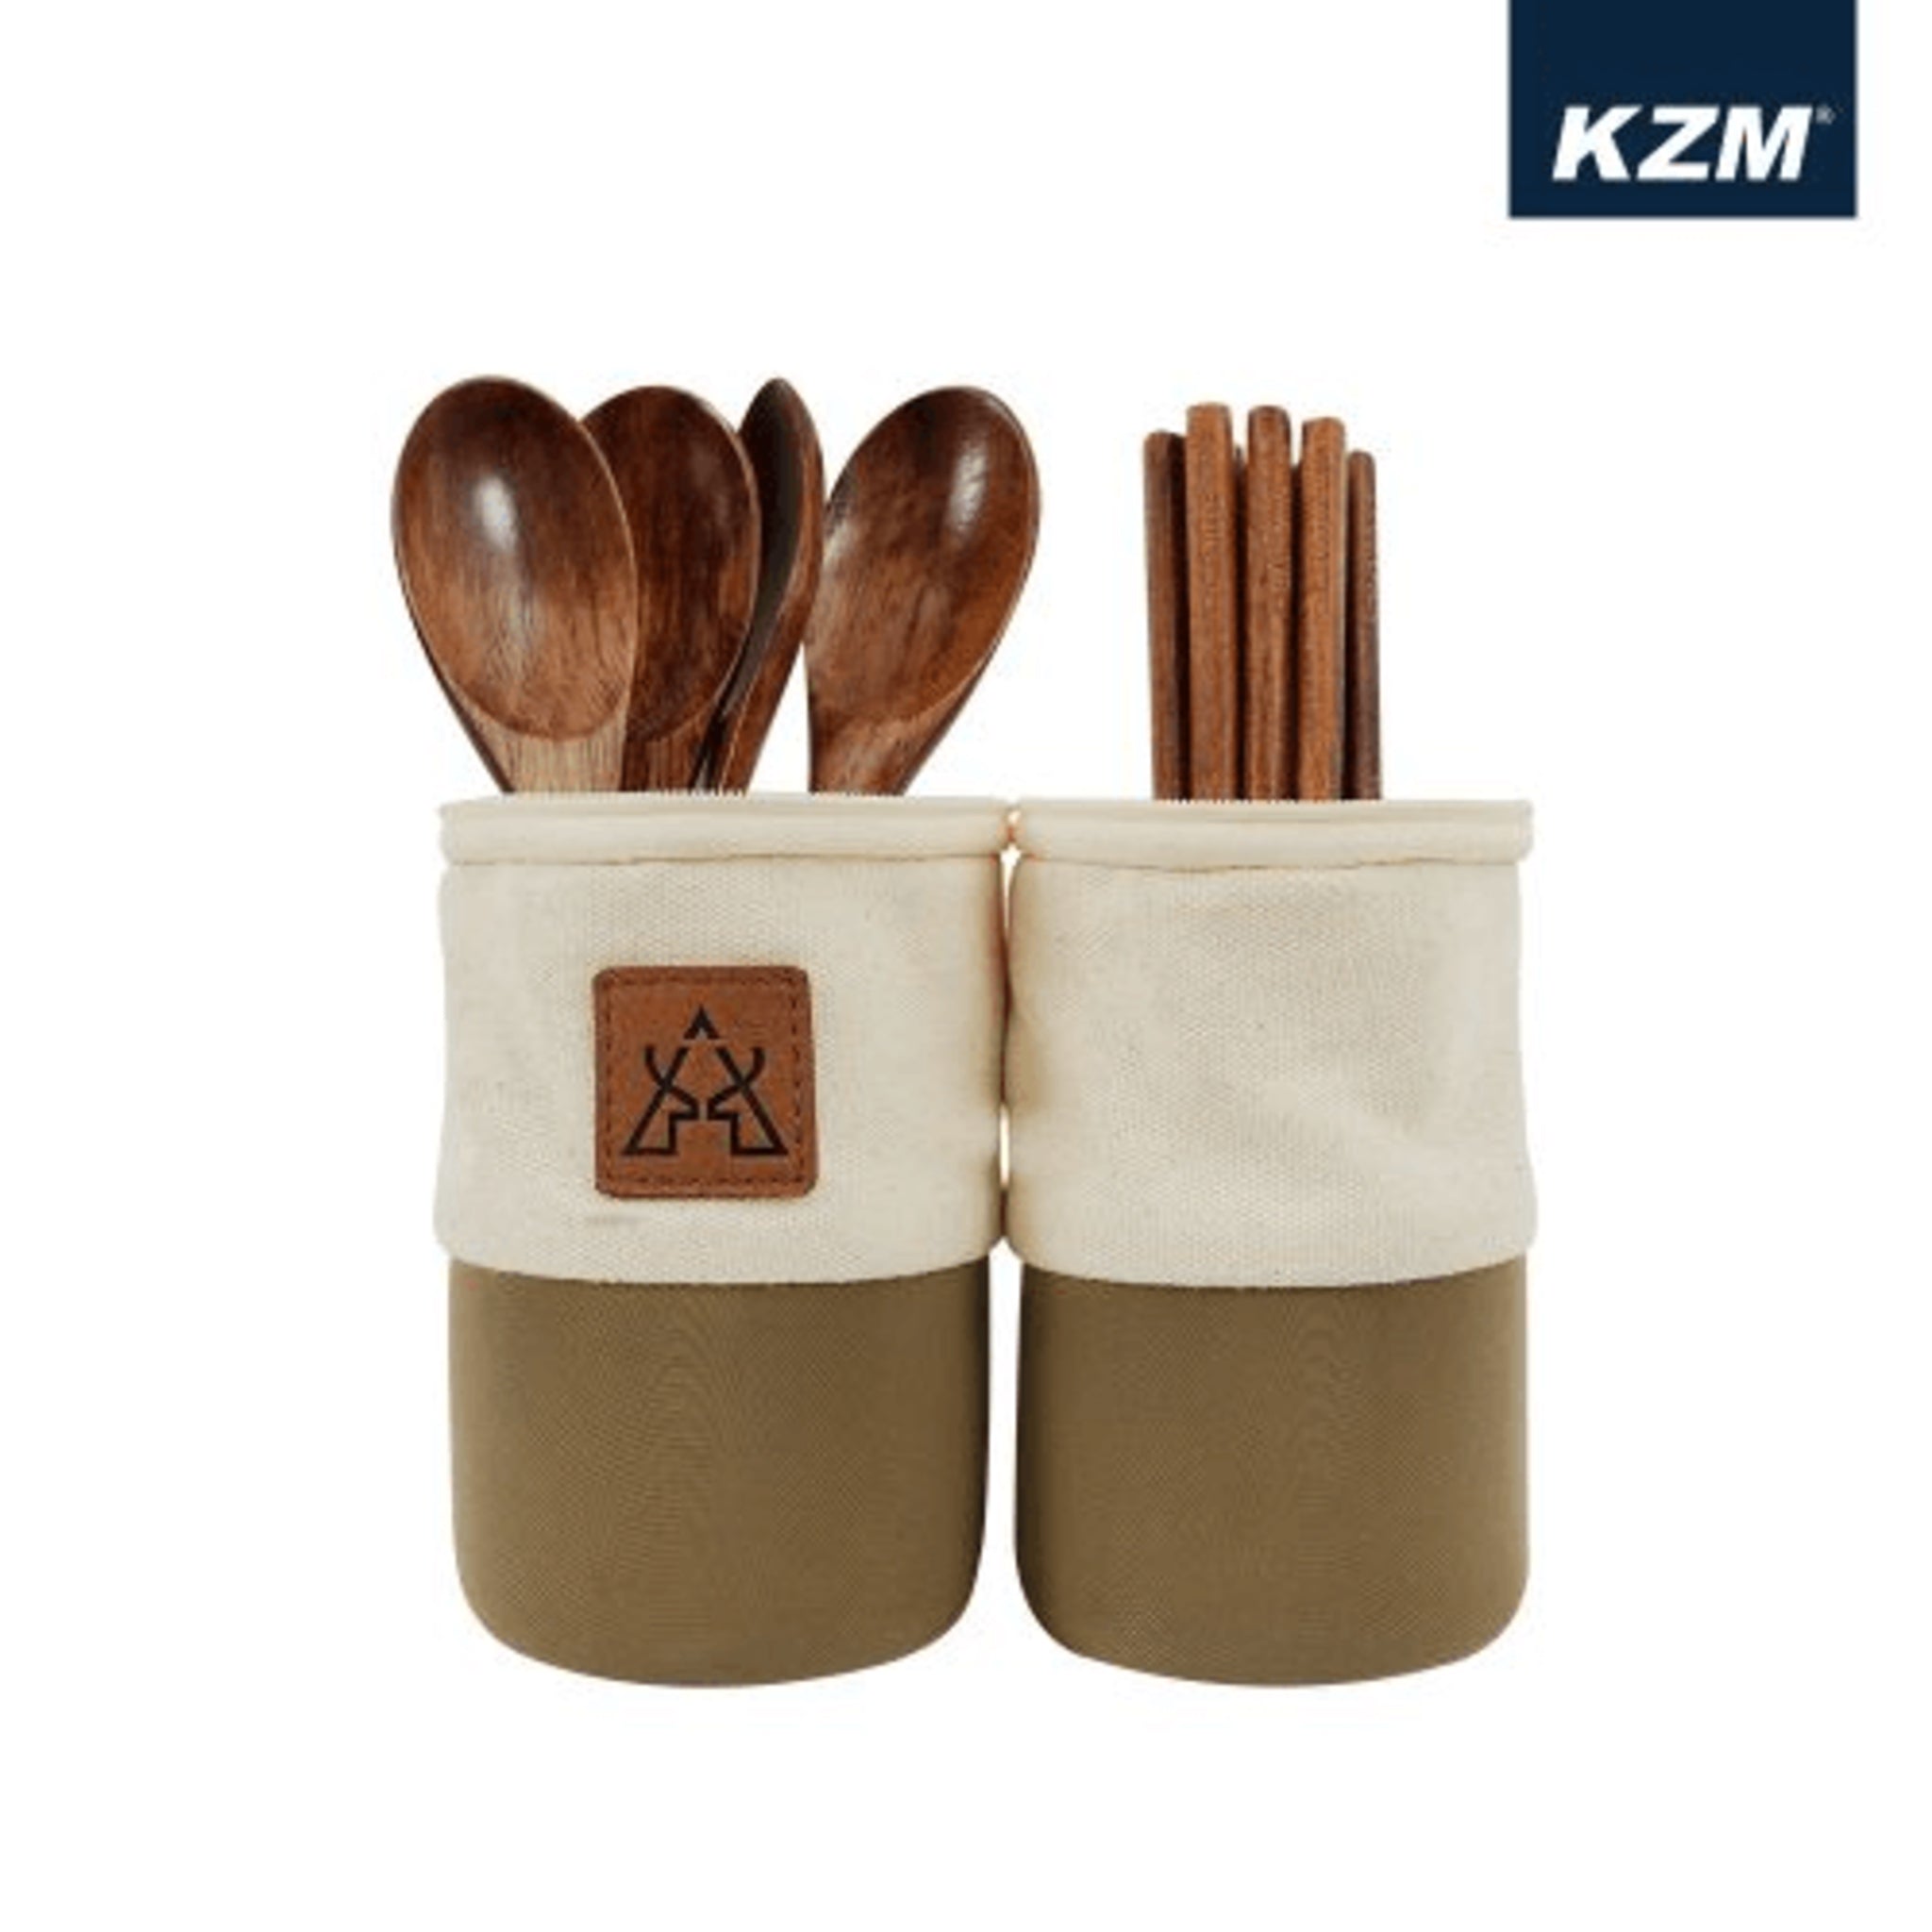 KAZMI KZM 原木餐具收納組 K21T3K10